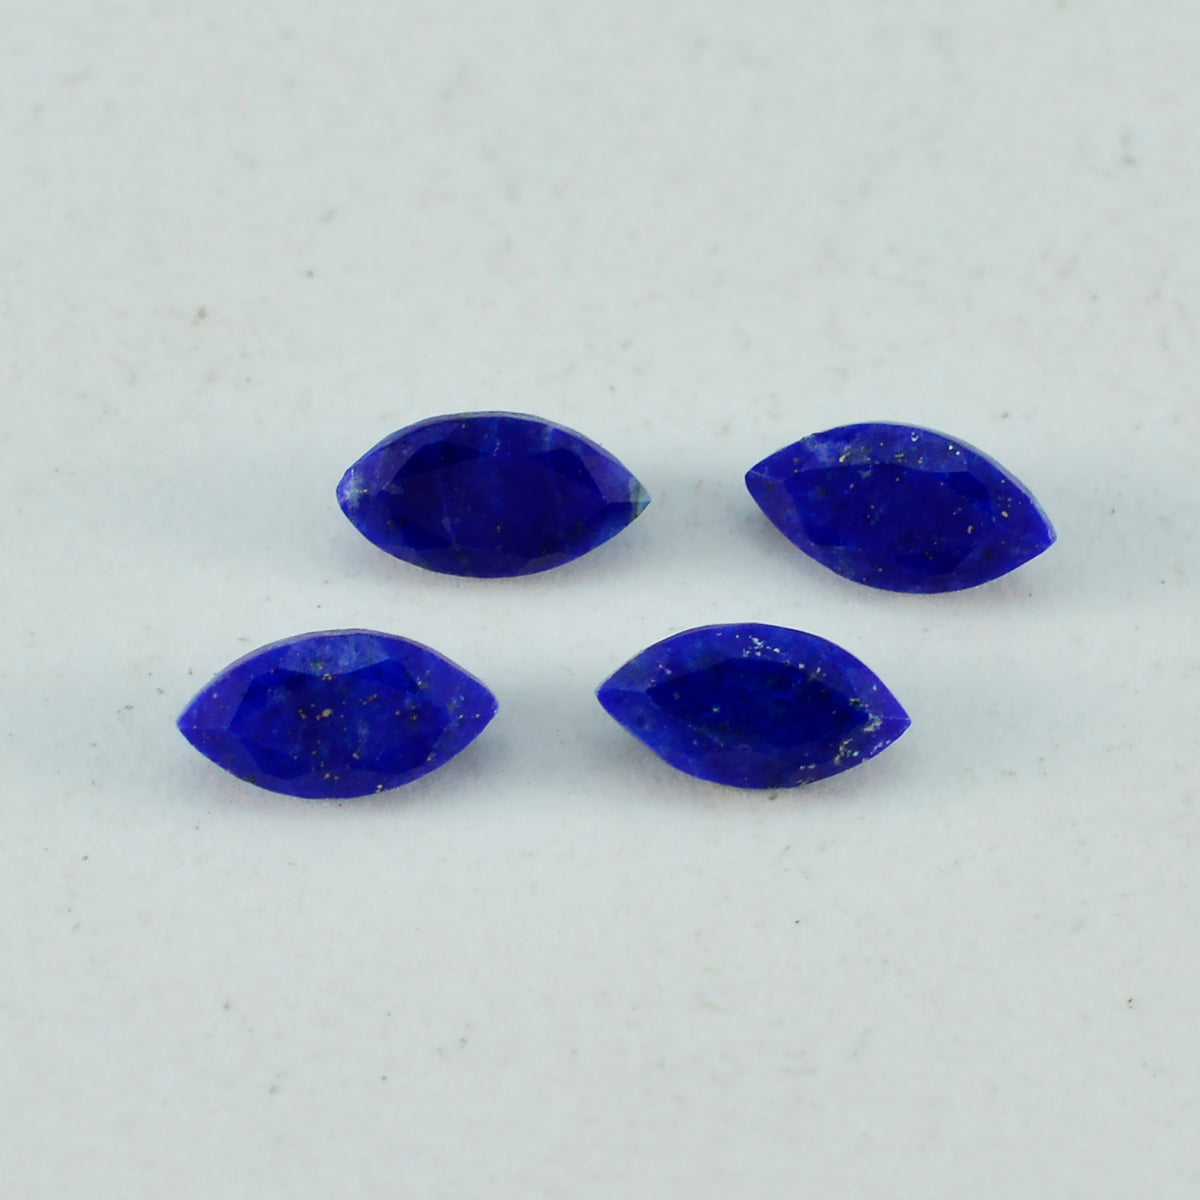 riyogems 1 шт. натуральный синий лазурит ограненный 8x16 мм драгоценный камень в форме маркизы A1 качество